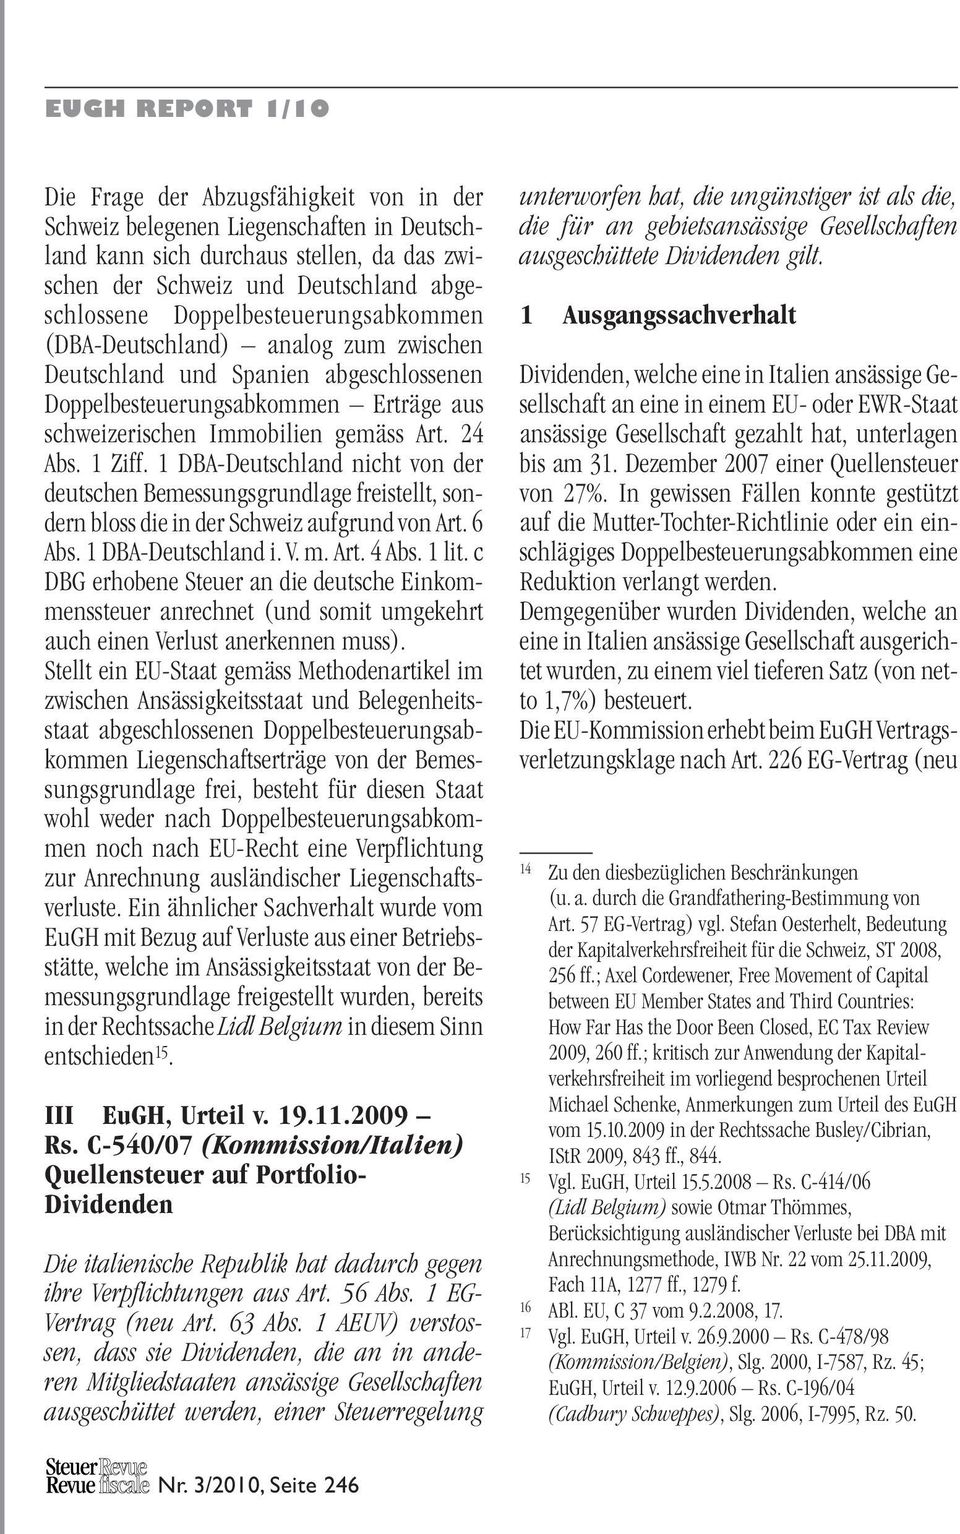 1 DBA-Deutschland nicht von der deutschen Bemessungsgrundlage freistellt, sondern bloss die in der Schweiz aufgrund von Art. 6 Abs. 1 DBA-Deutschland i. V. m. Art. 4 Abs. 1 lit.